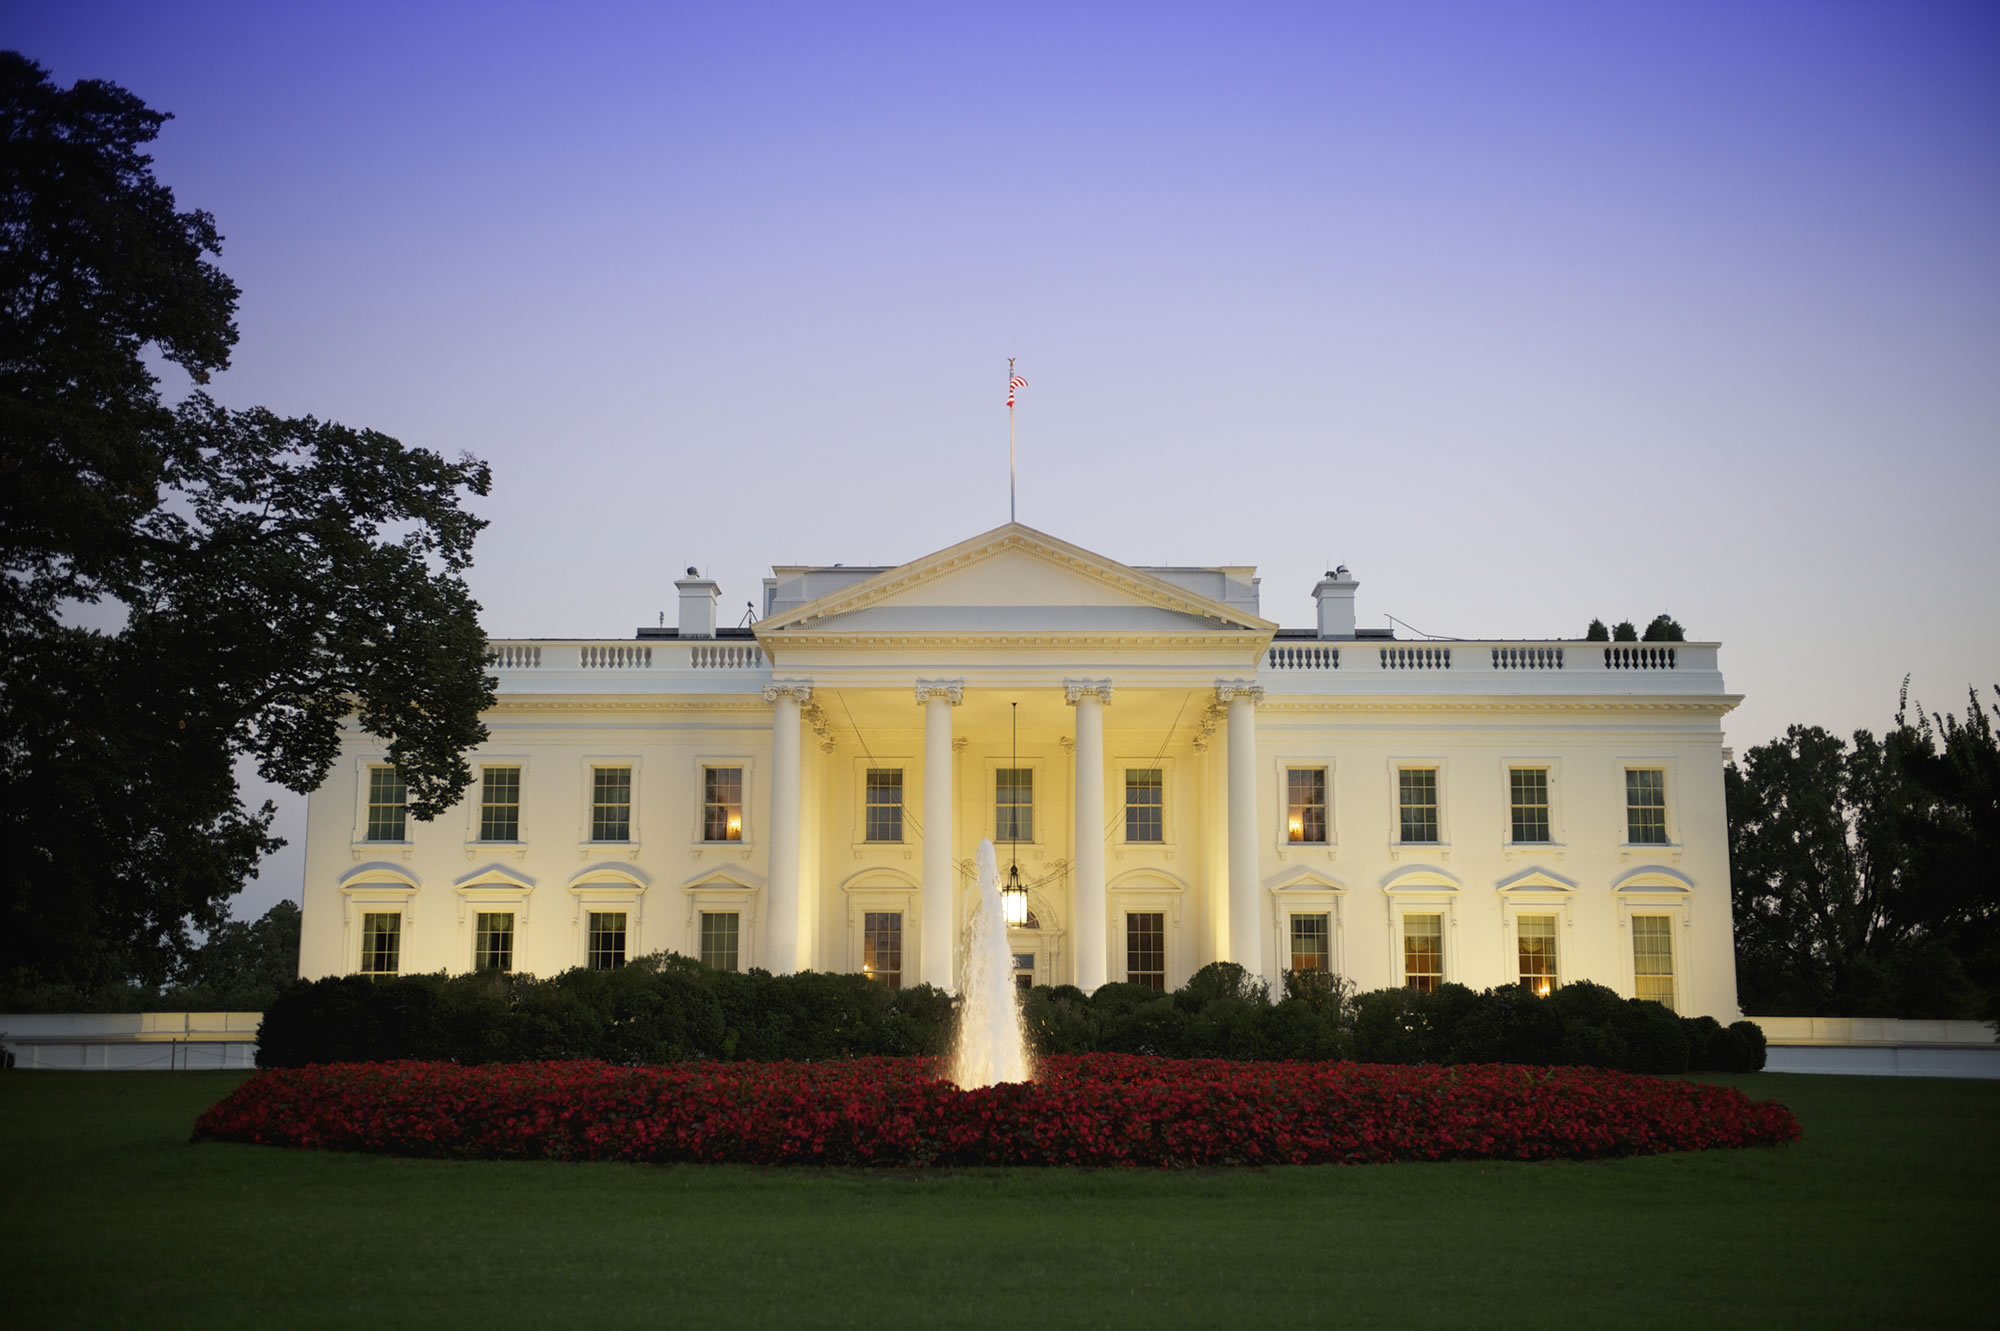 Tour the White House in Washington